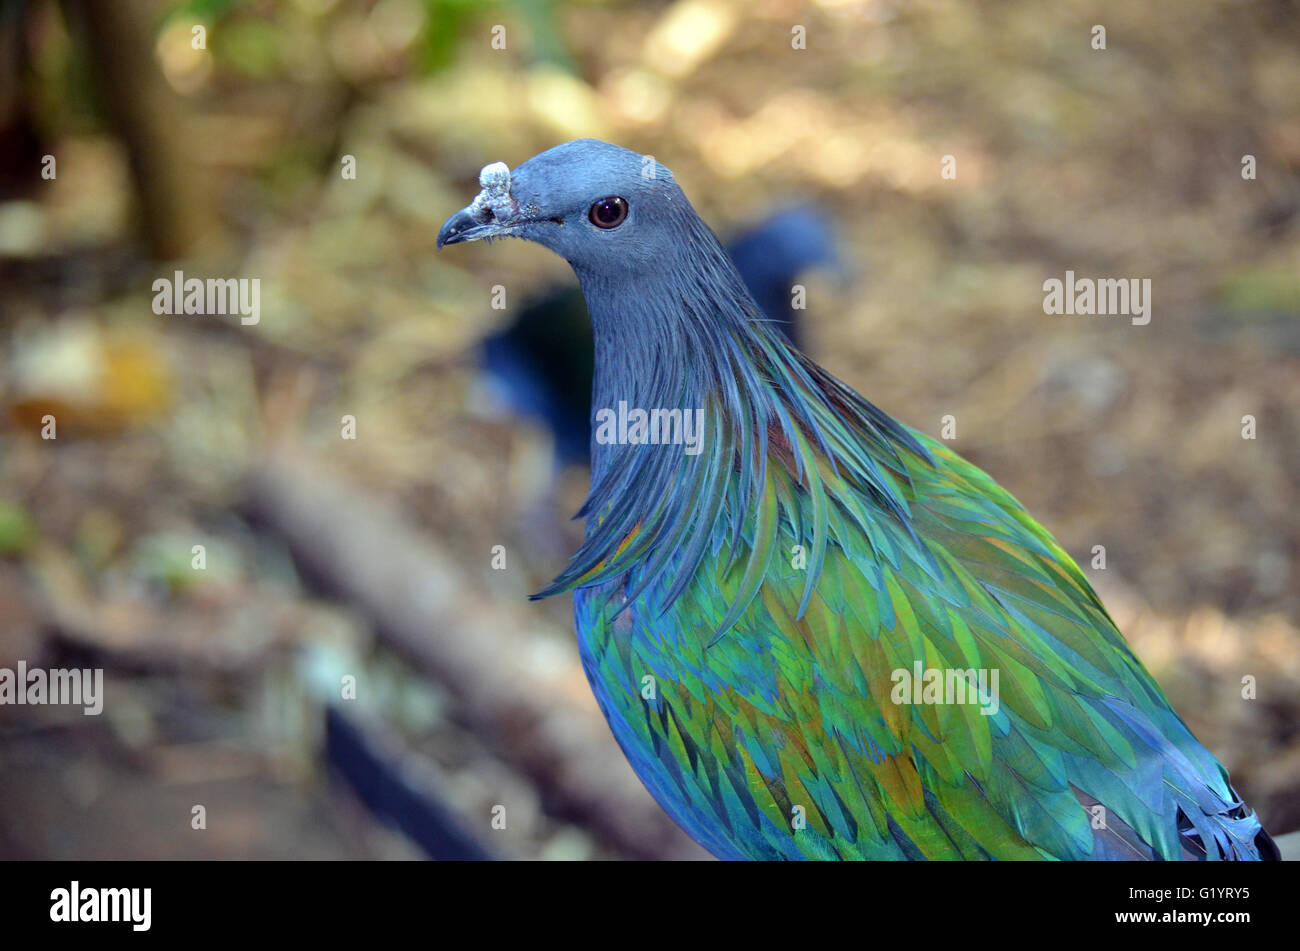 Schöne blaue Federn einer Taube Nicobar Stockfotografie - Alamy